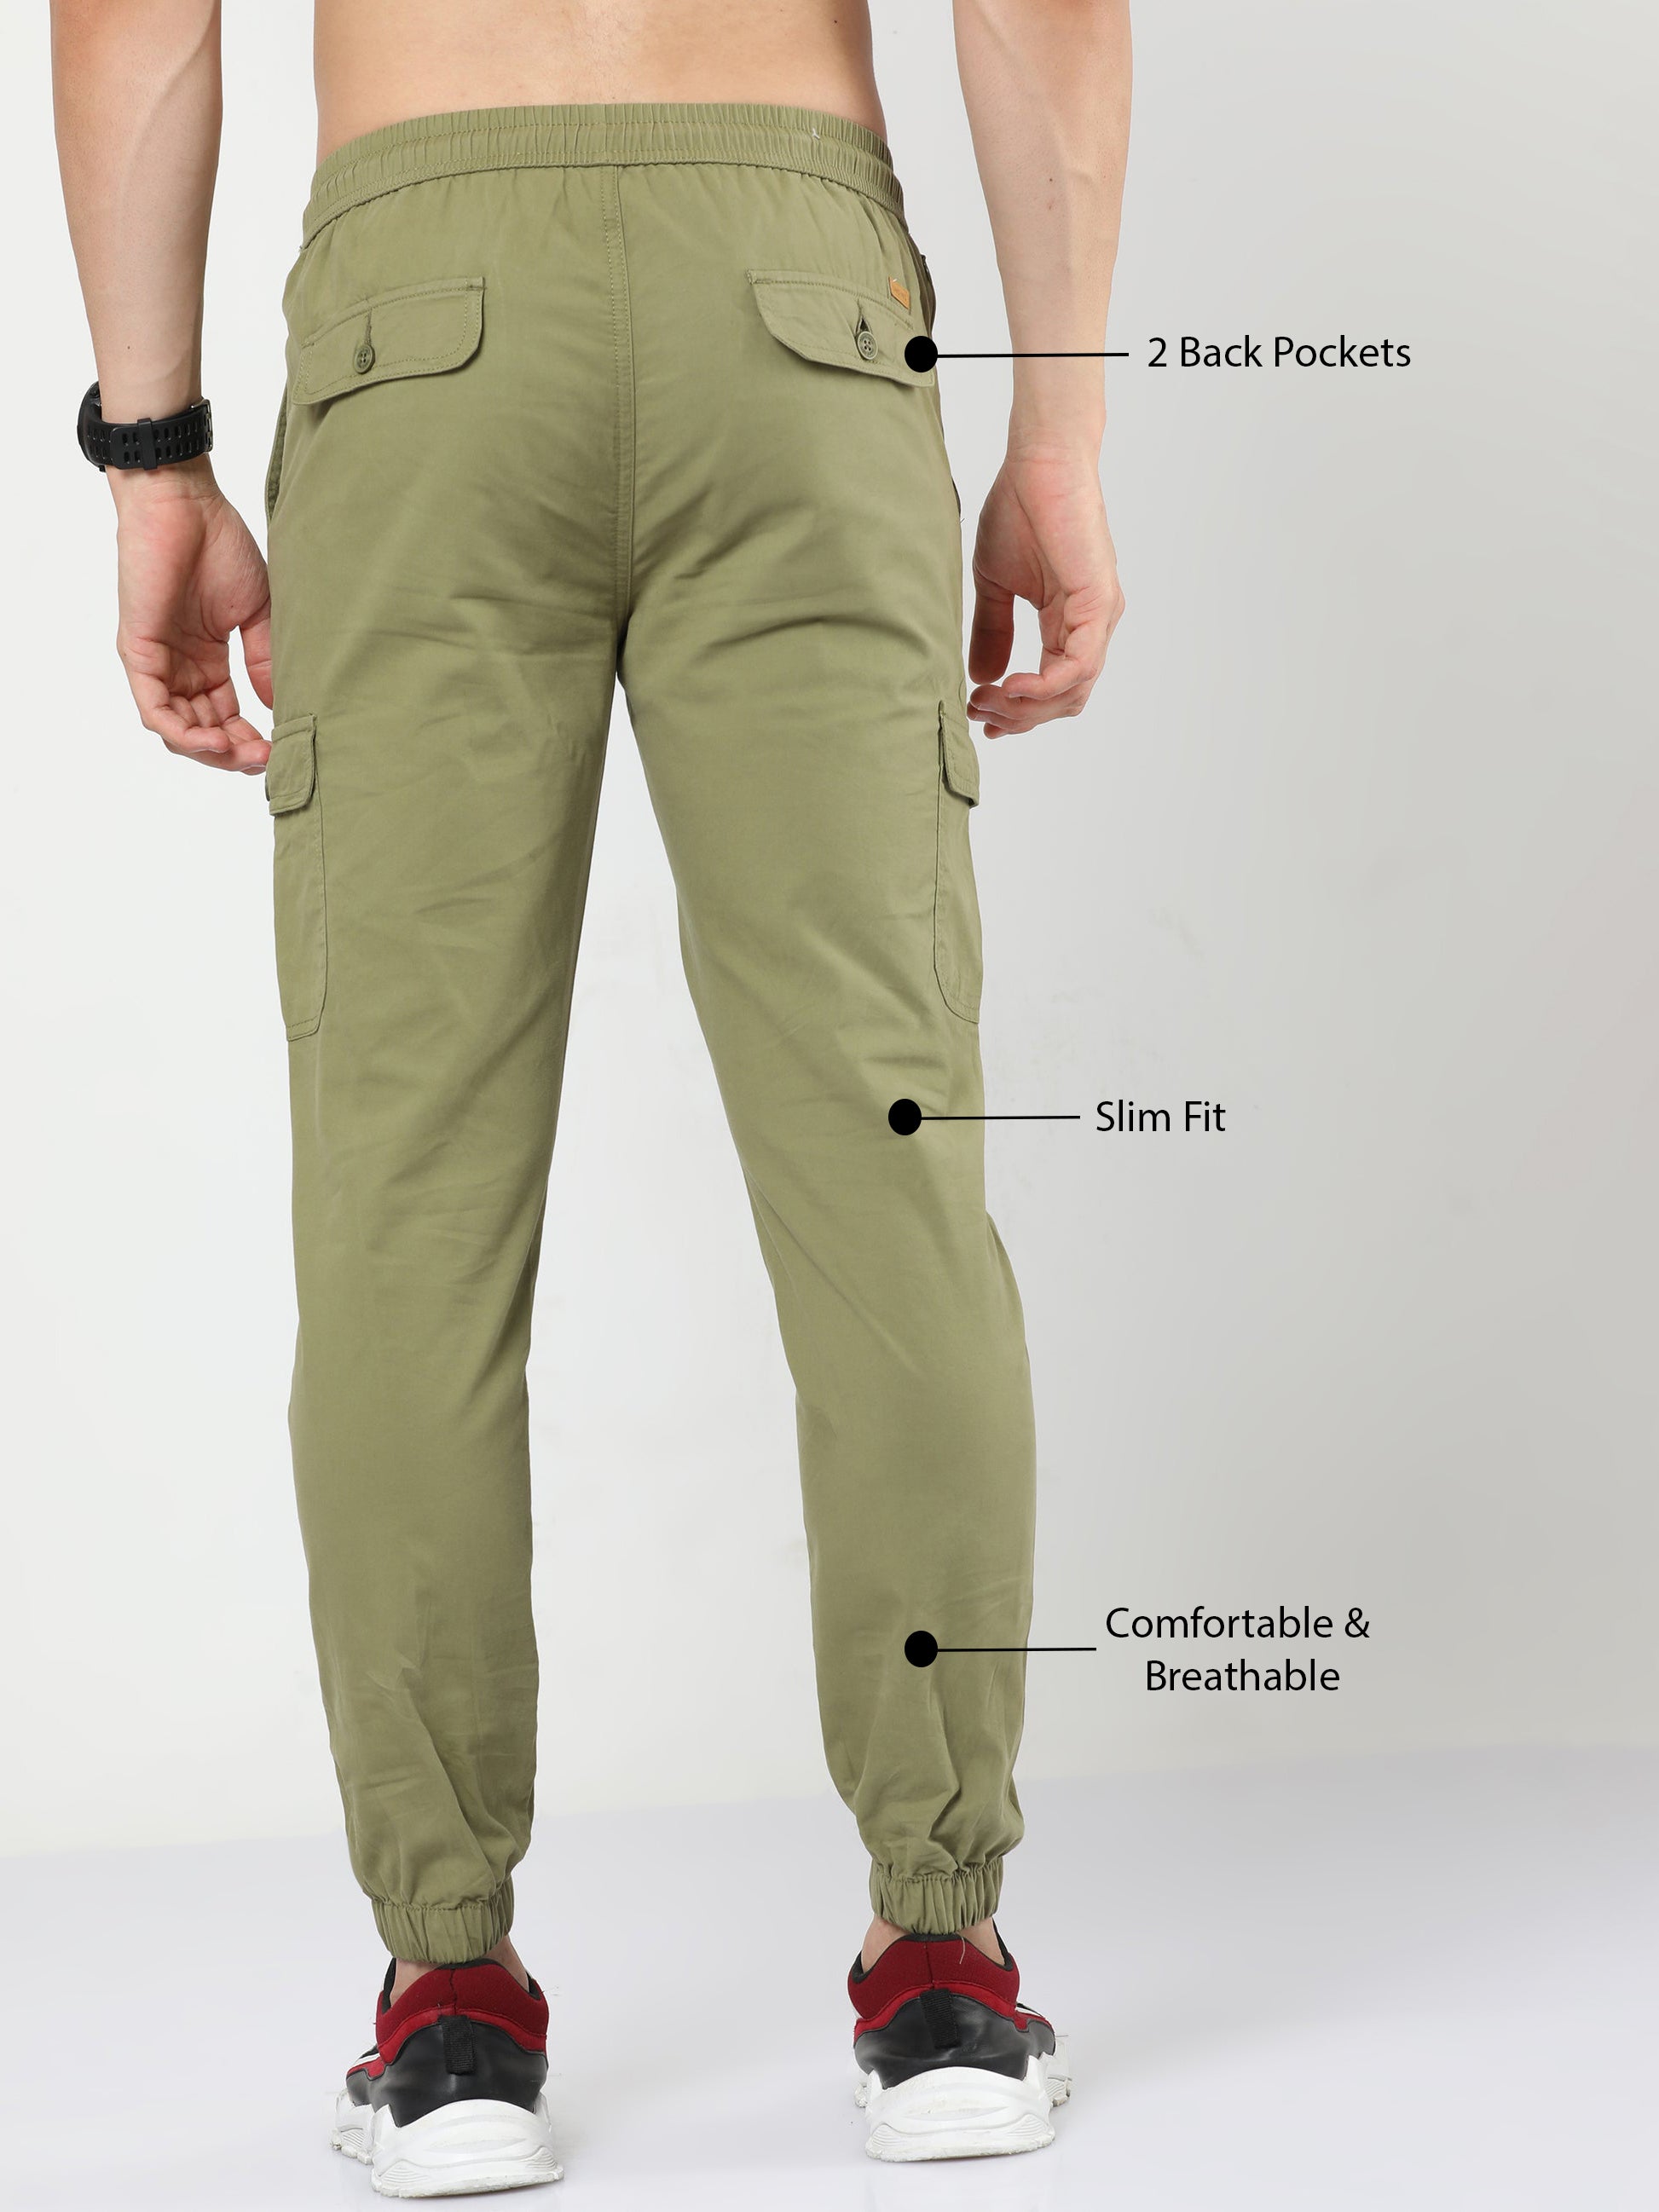 Buy Black Solid Joggers Pants Online - Label Ritu Kumar India Store View